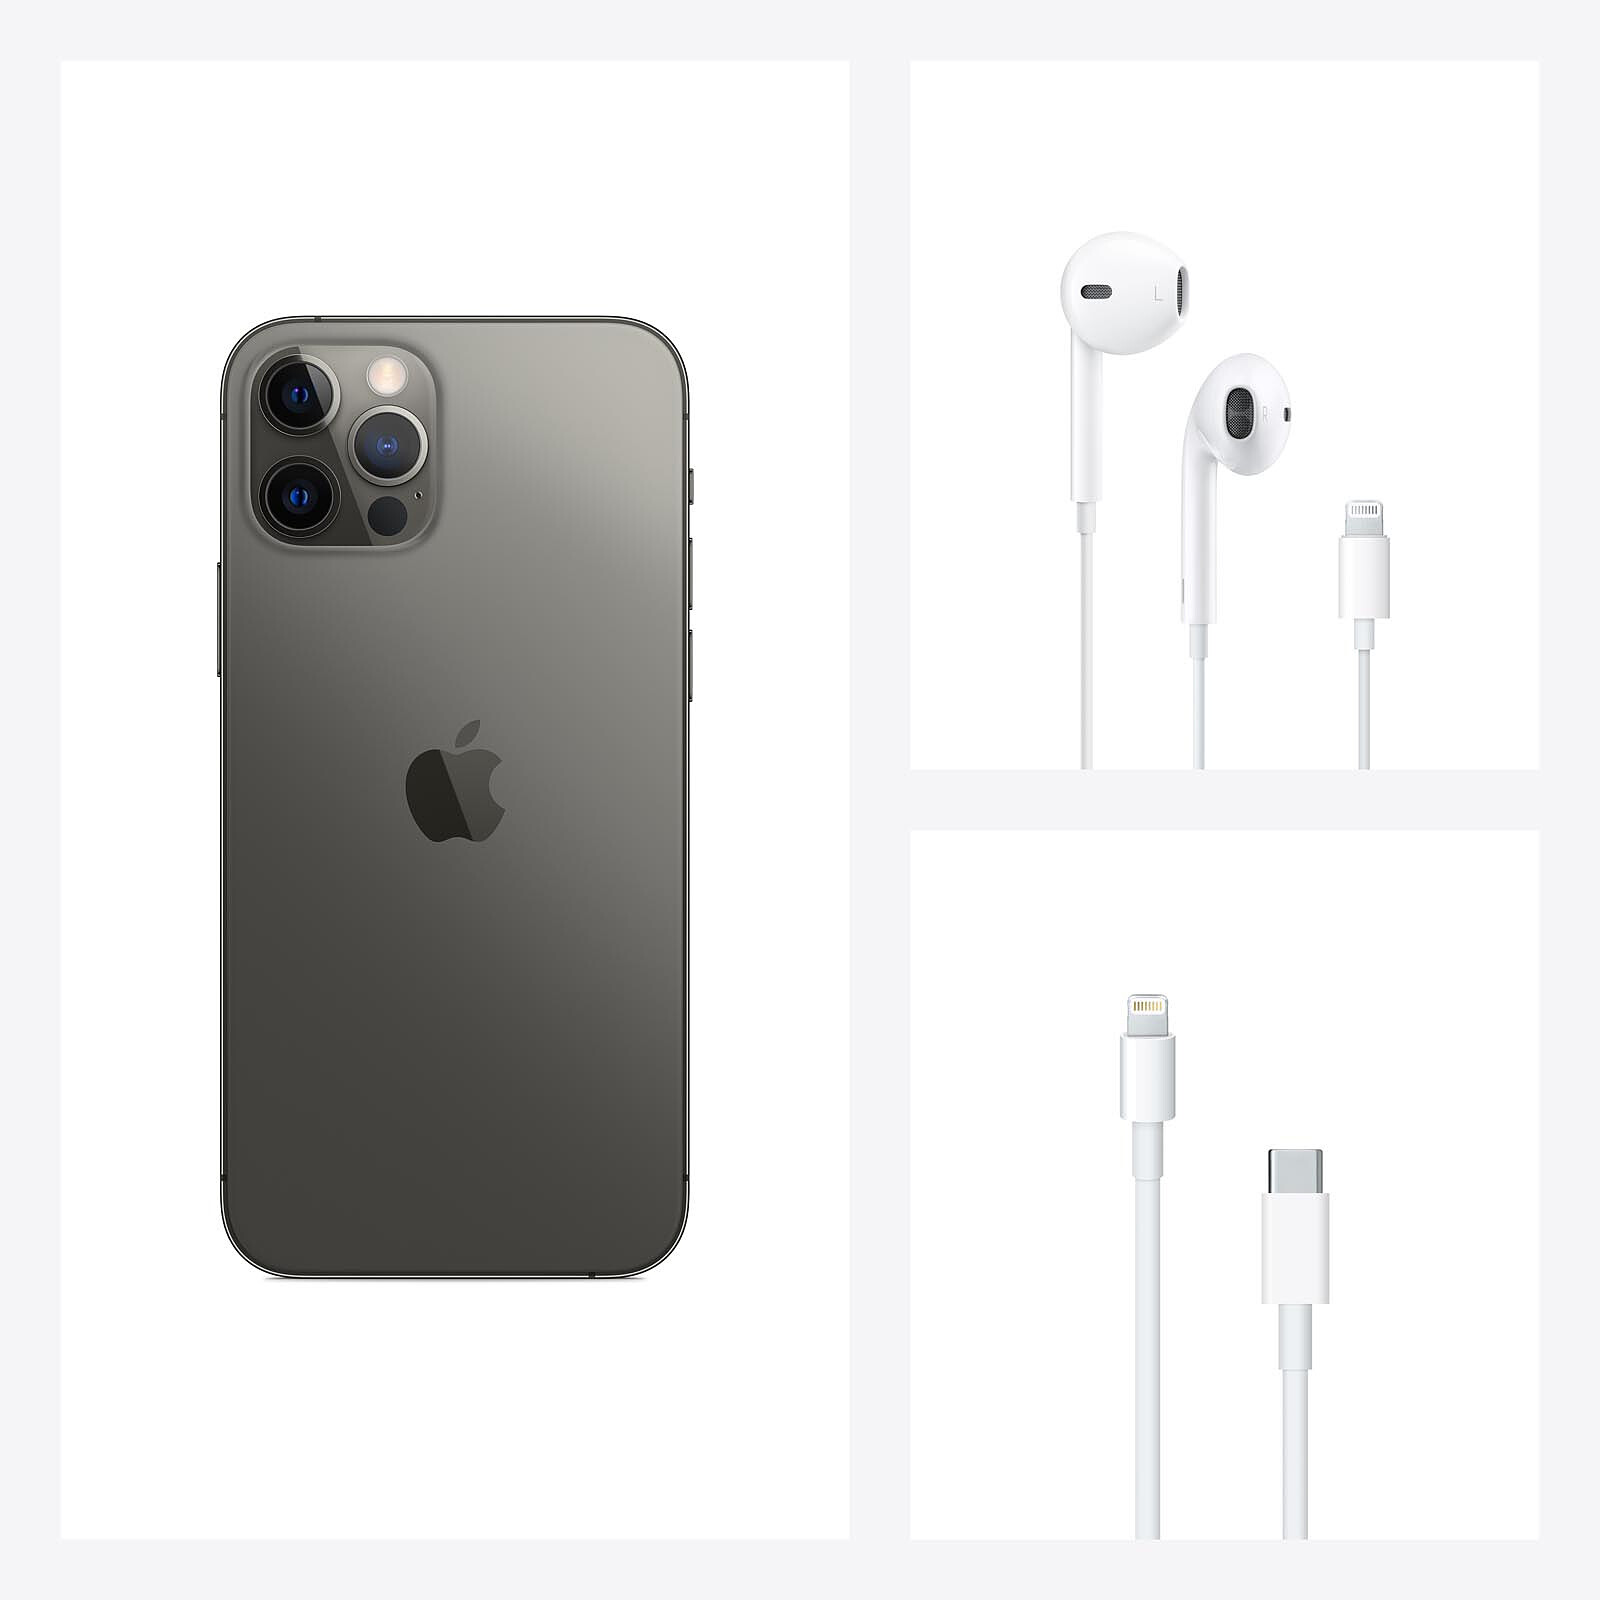 Nuevos Apple iPhone 12 Pro y 12 Pro Max: características, precio y